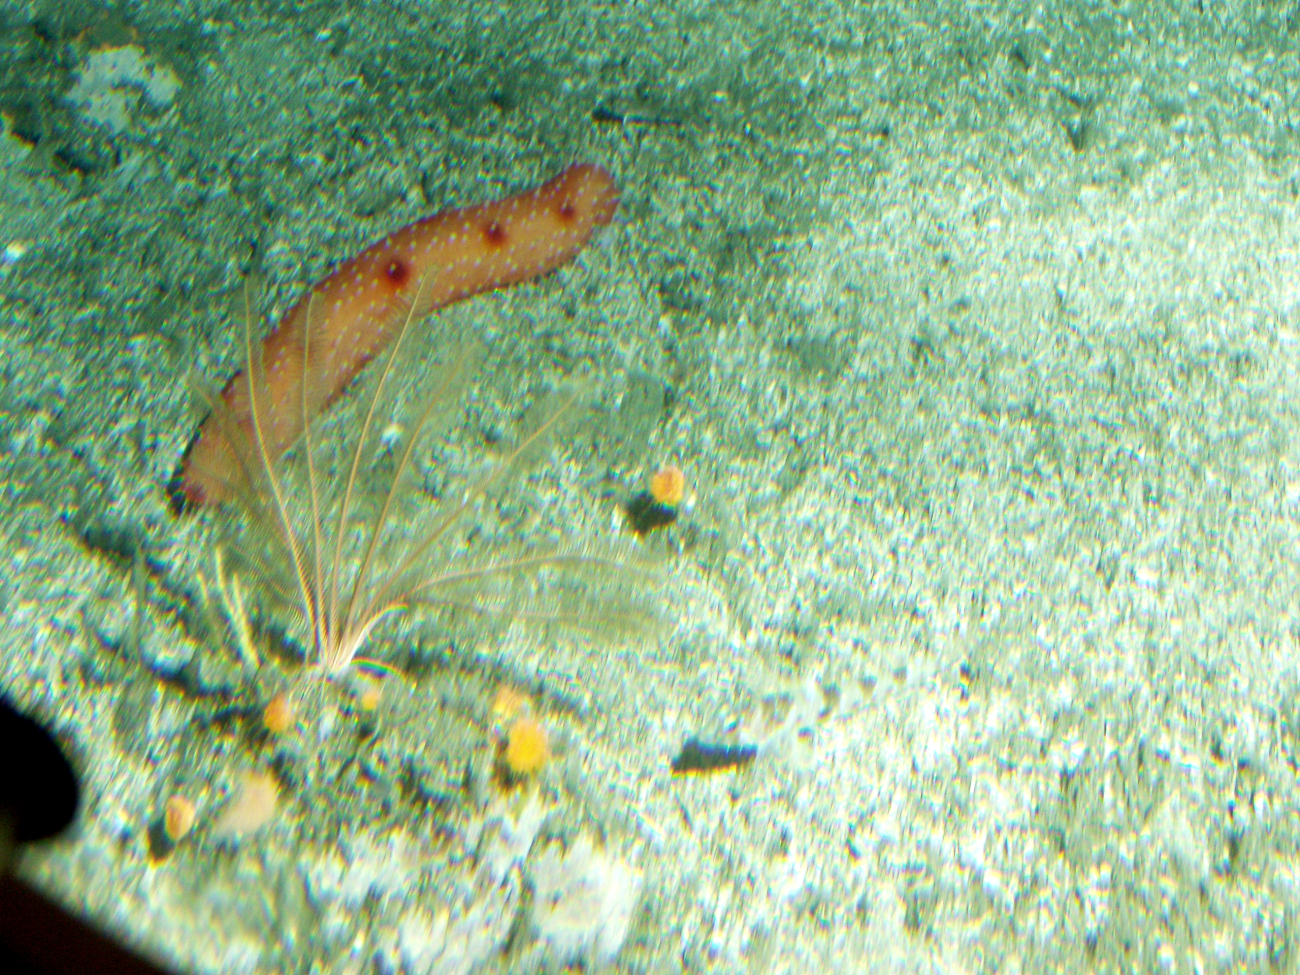 California sea cucumber (Parastichopus californicus) close up inrocky reef habitat at 35 meters depth